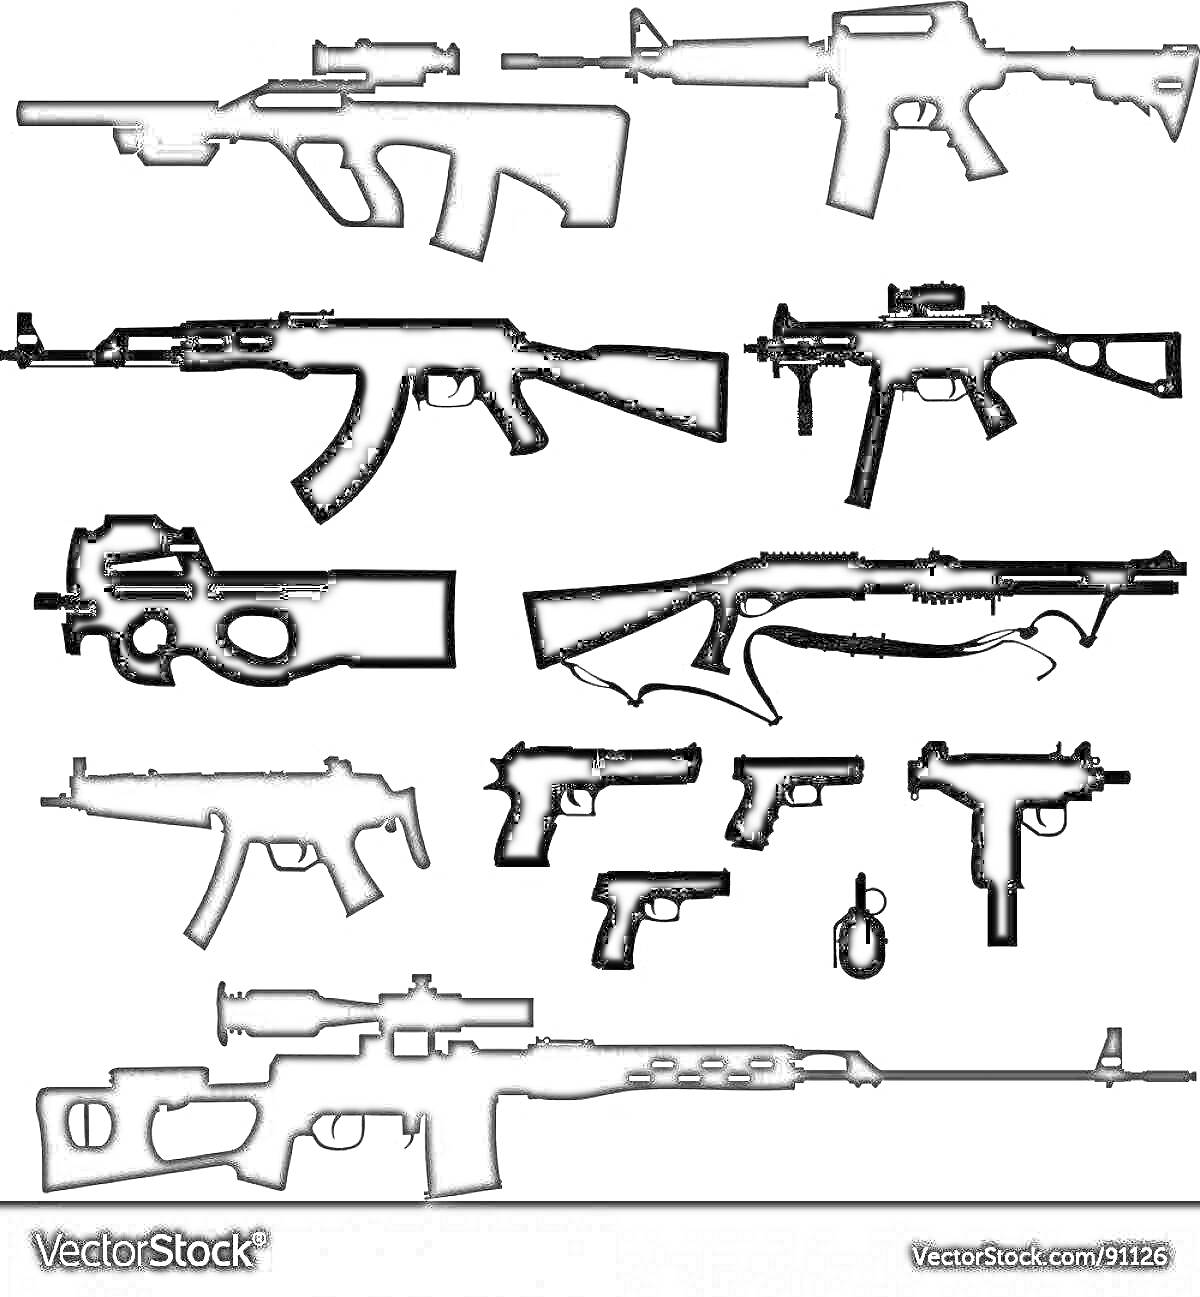 Раскраска Черно-белая раскраска с изображением различных видов огнестрельного оружия: штурмовая винтовка, автомат, пистолет-пулемет, снайперская винтовка, дробовик, пистолет, граната.